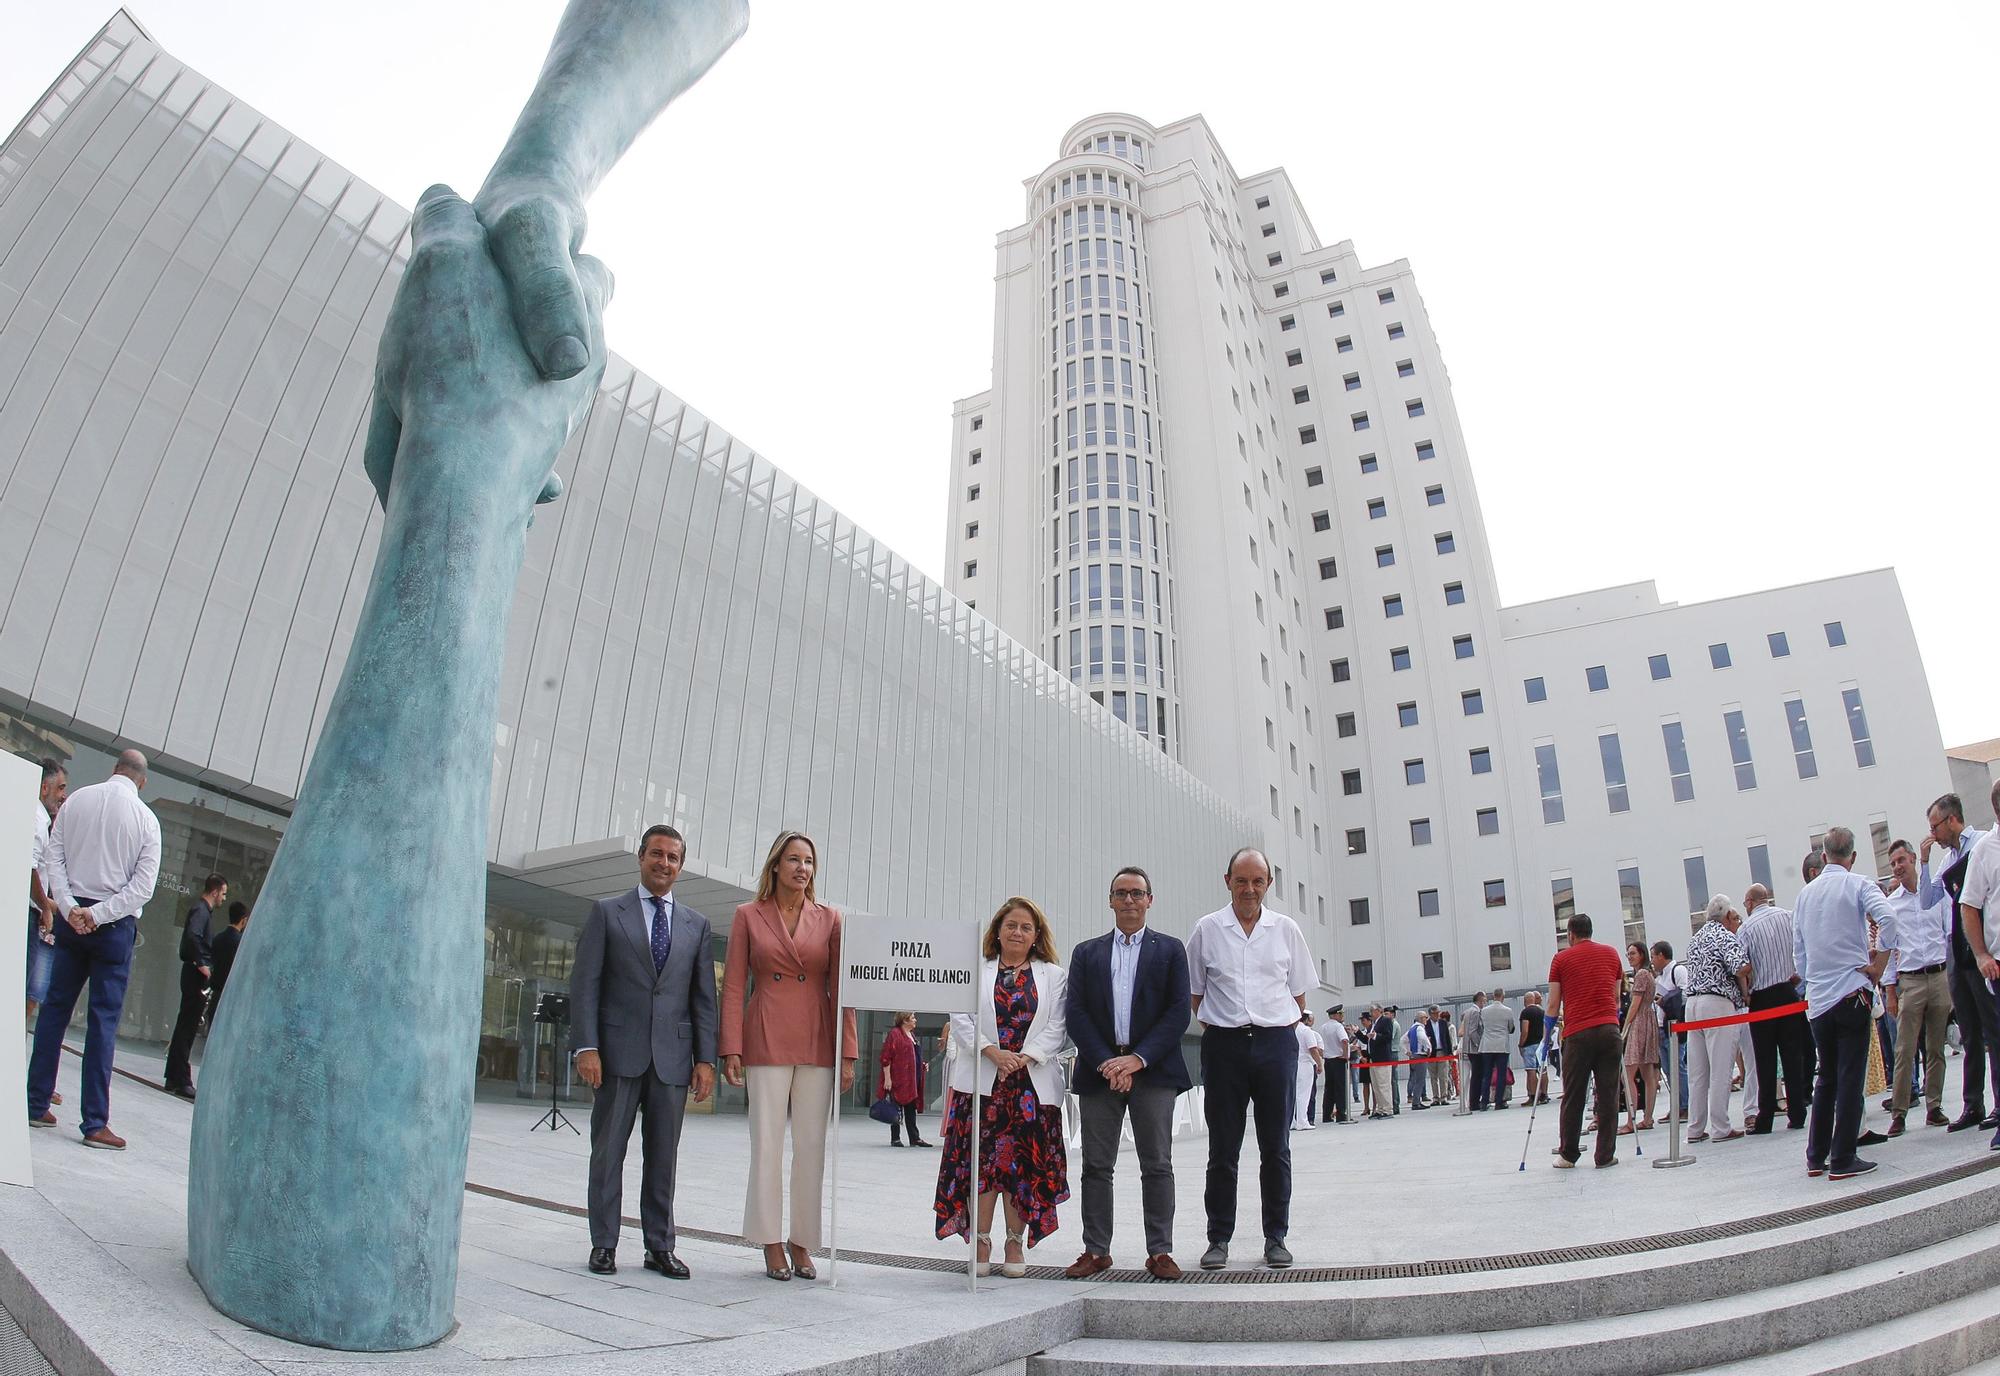 Vigo inaugura una plaza en honor a Miguel Ángel Blanco